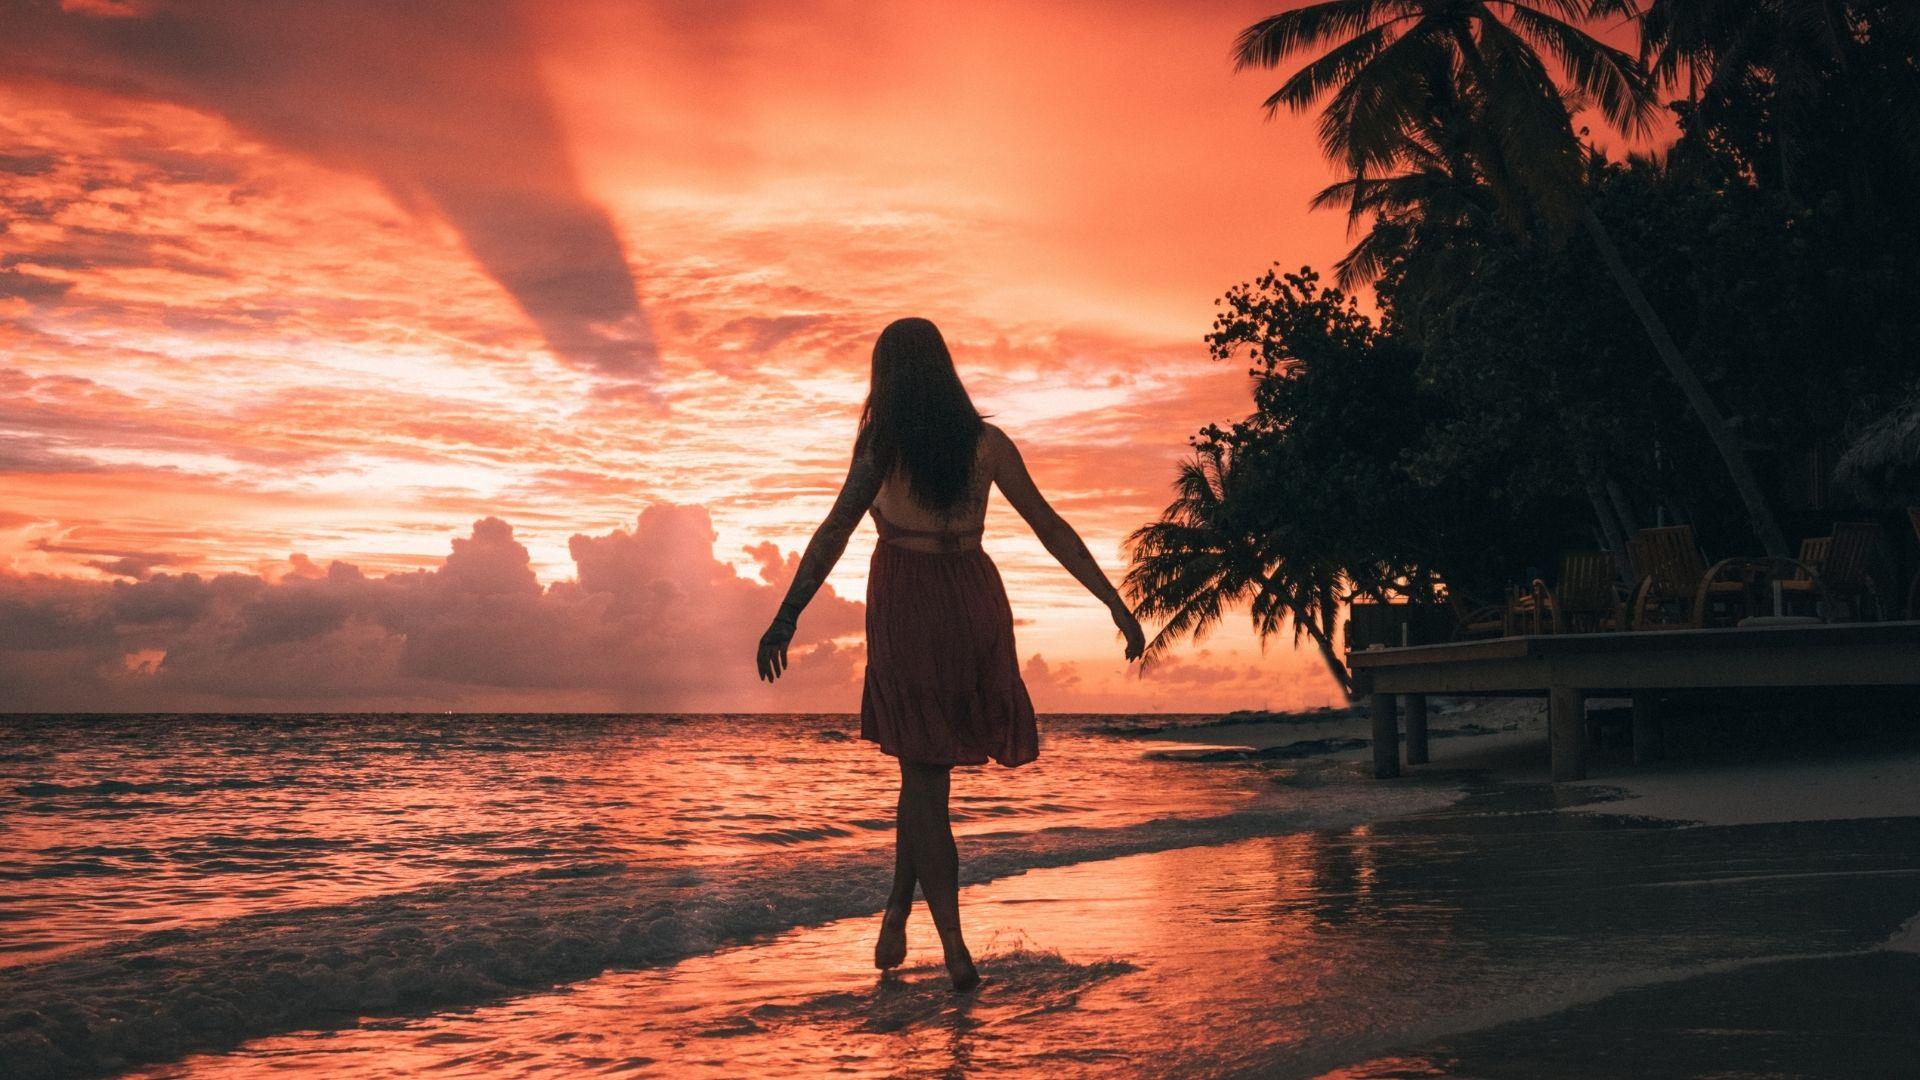 Angsana Ihuru Maldives Sunset